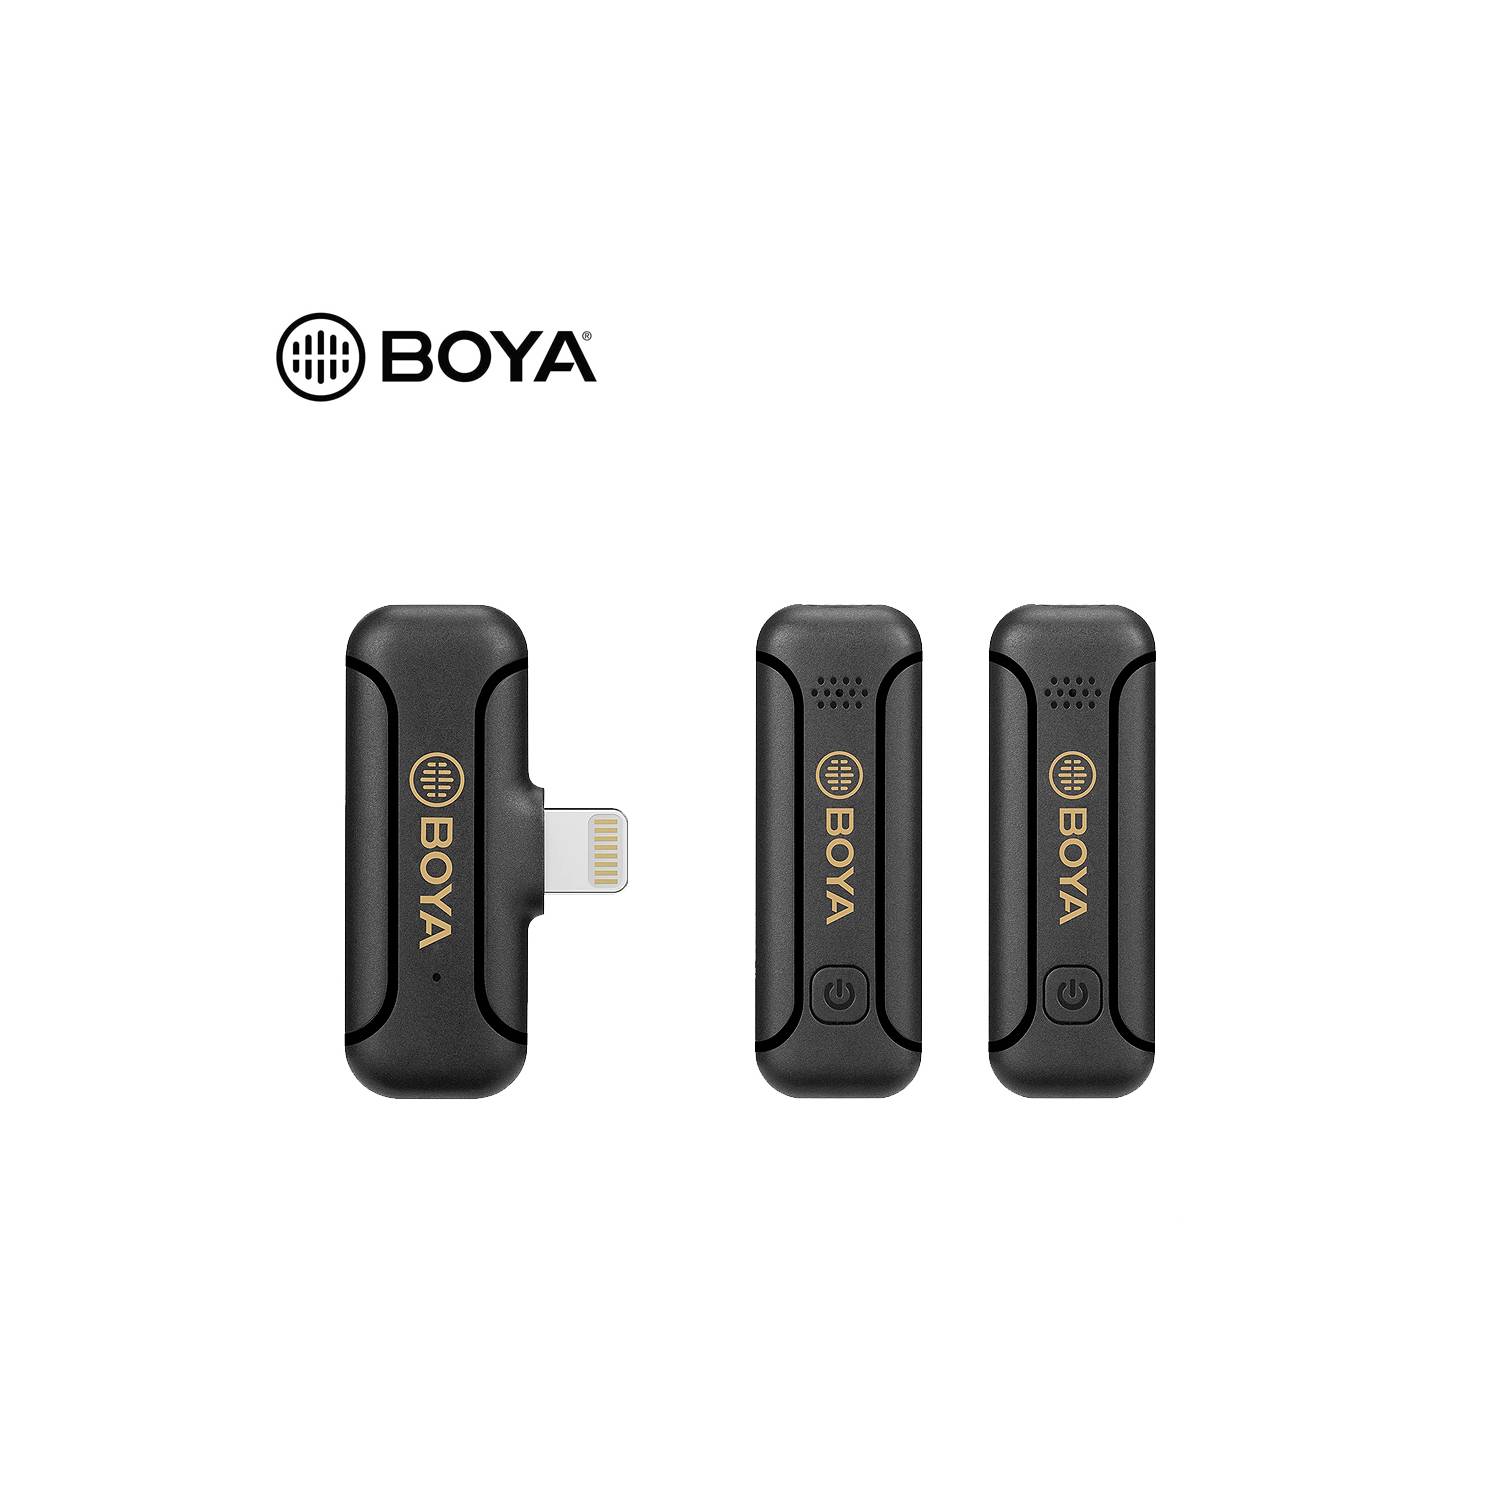 Micrófono Inalámbrico Boya By-Wm4 Pro Color Negro Para Android